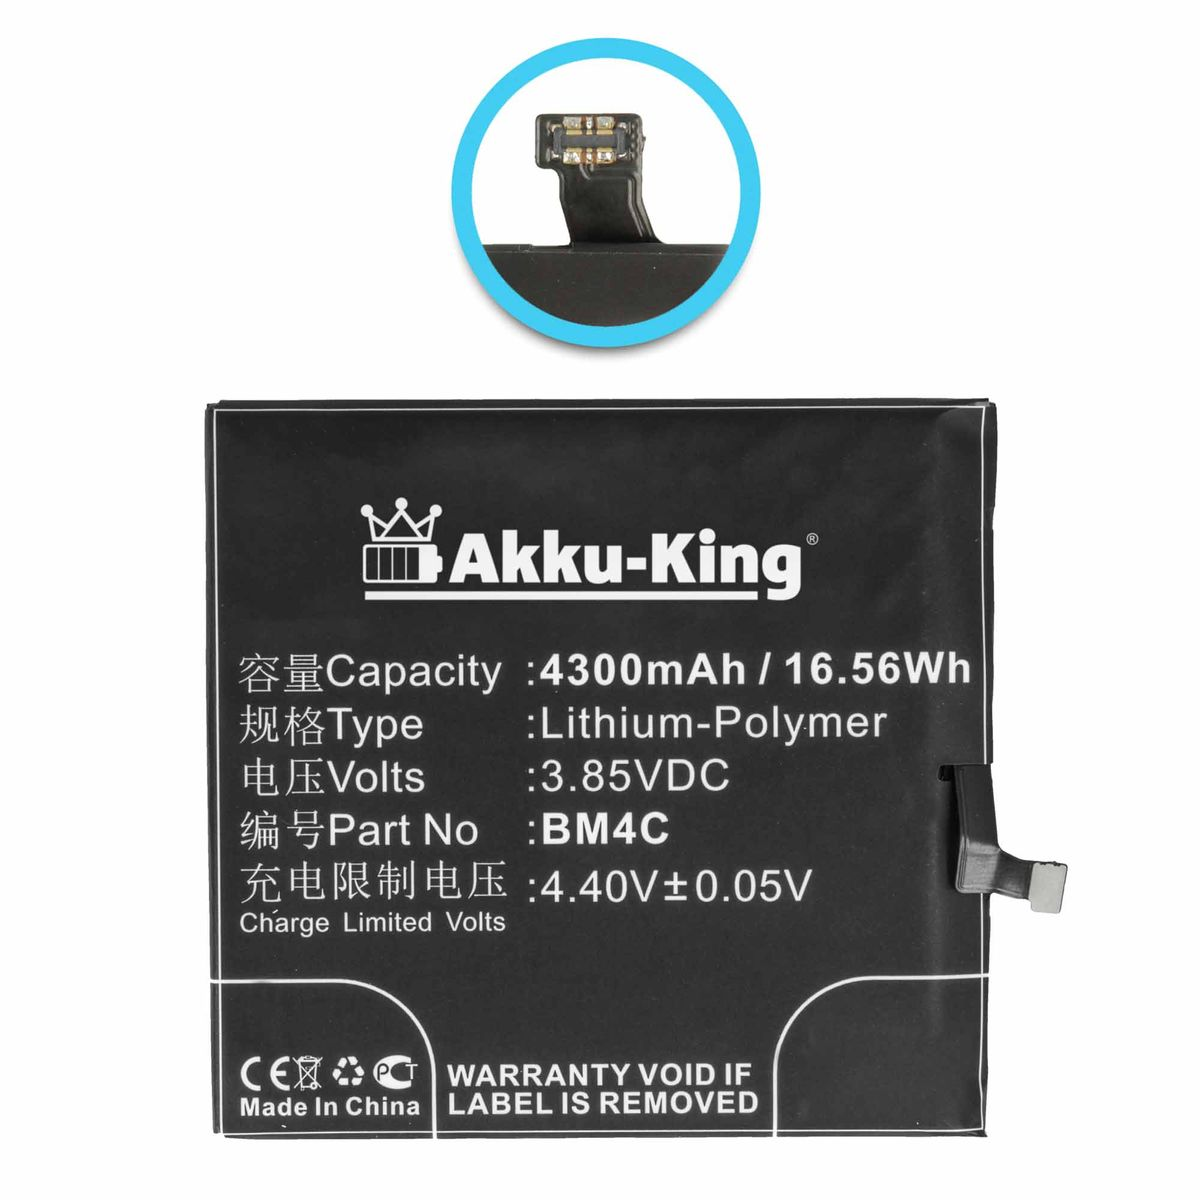 Akku kompatibel BM4C Handy-Akku, Xiaomi AKKU-KING Volt, Li-Polymer 3.85 mit 4300mAh